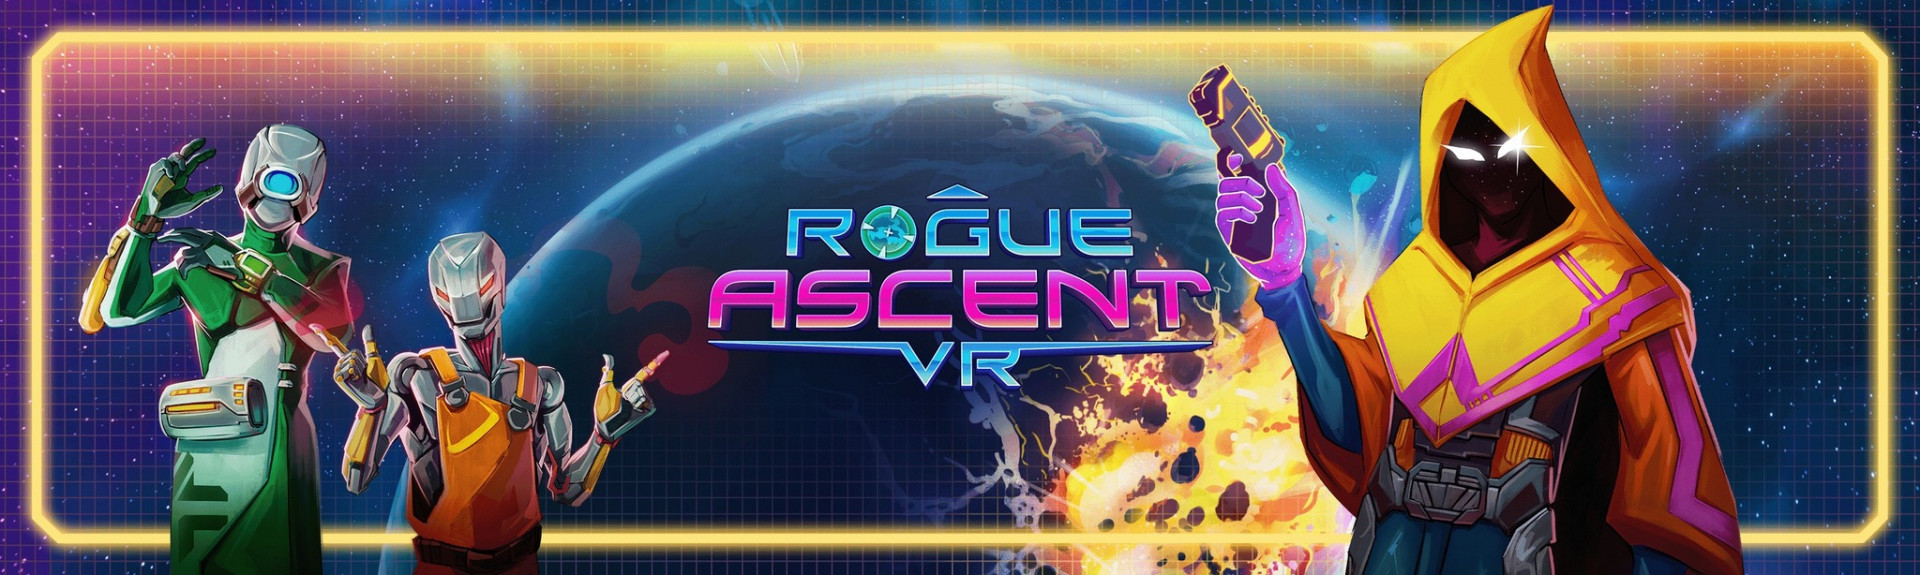 Rogue Ascent VR: ANÁLISIS